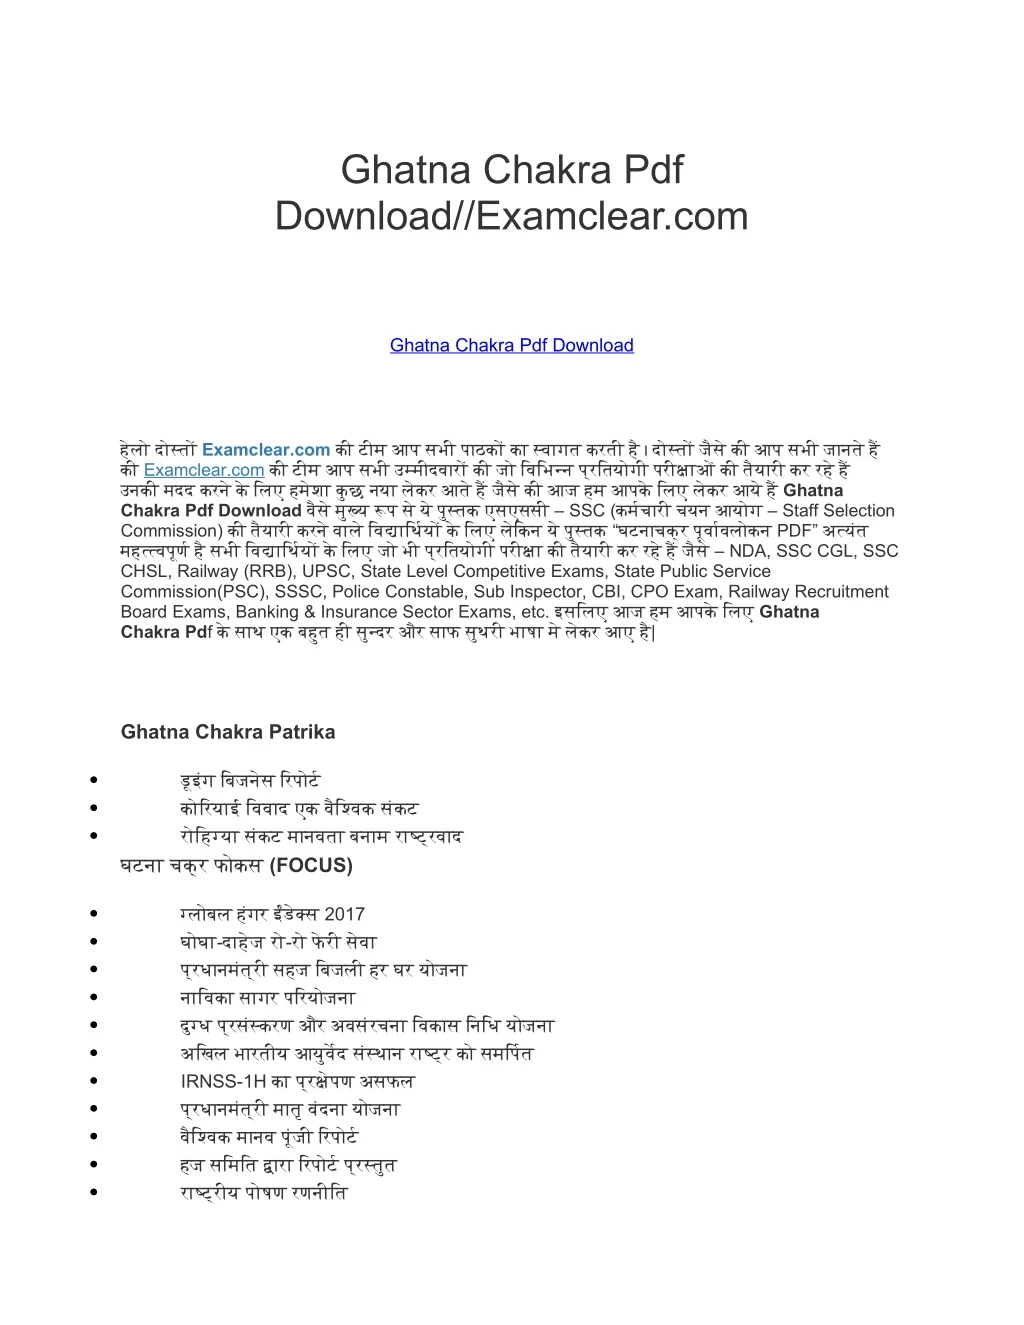 ghatna chakra pdf download examclear com